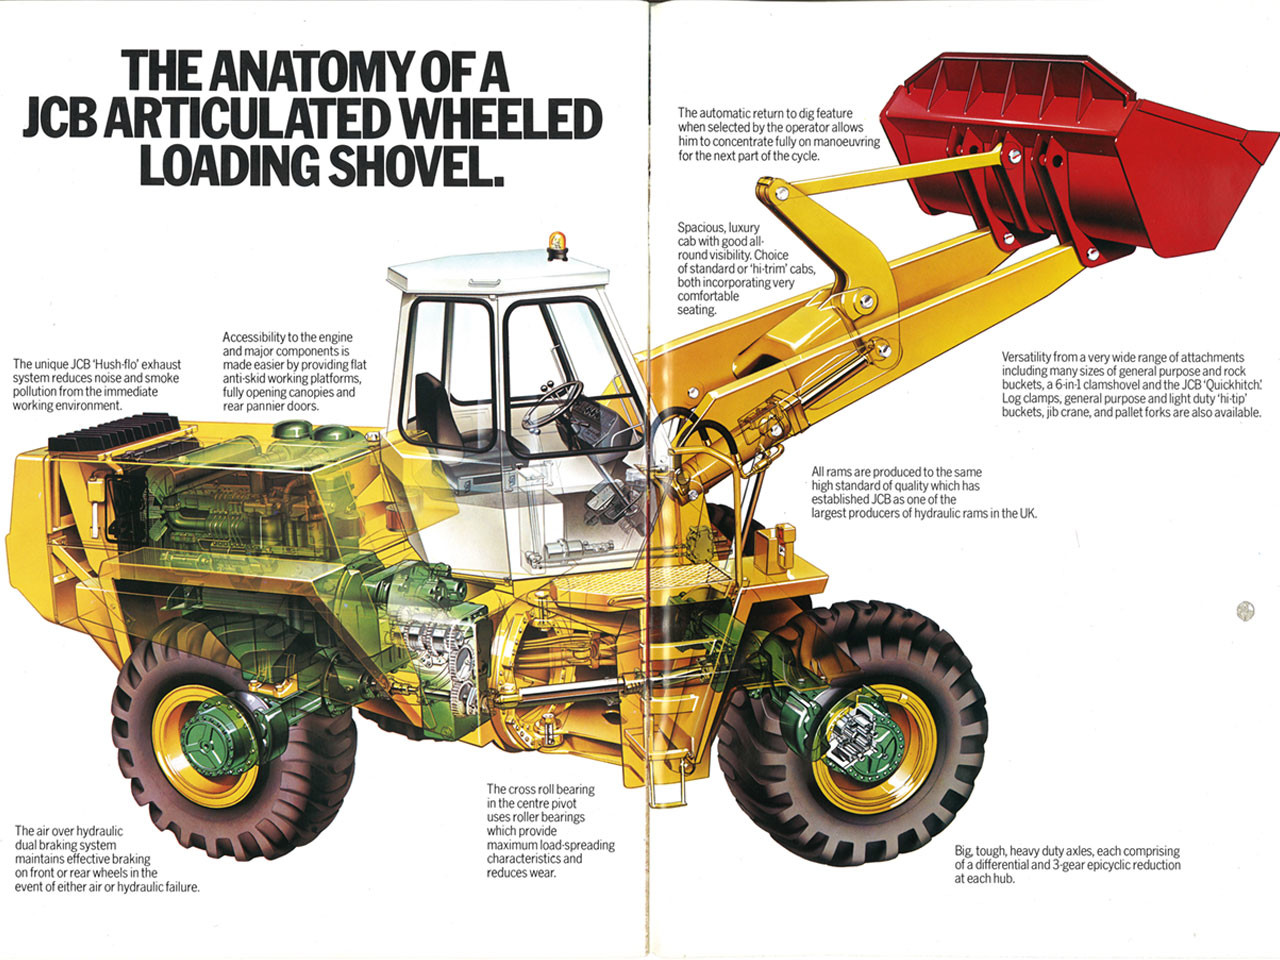 JCB nelle pagine della storia 1680x1050_1558611171_1973---the-anatomy-of-a-jcb-articulated-wheeled-loading-shovel